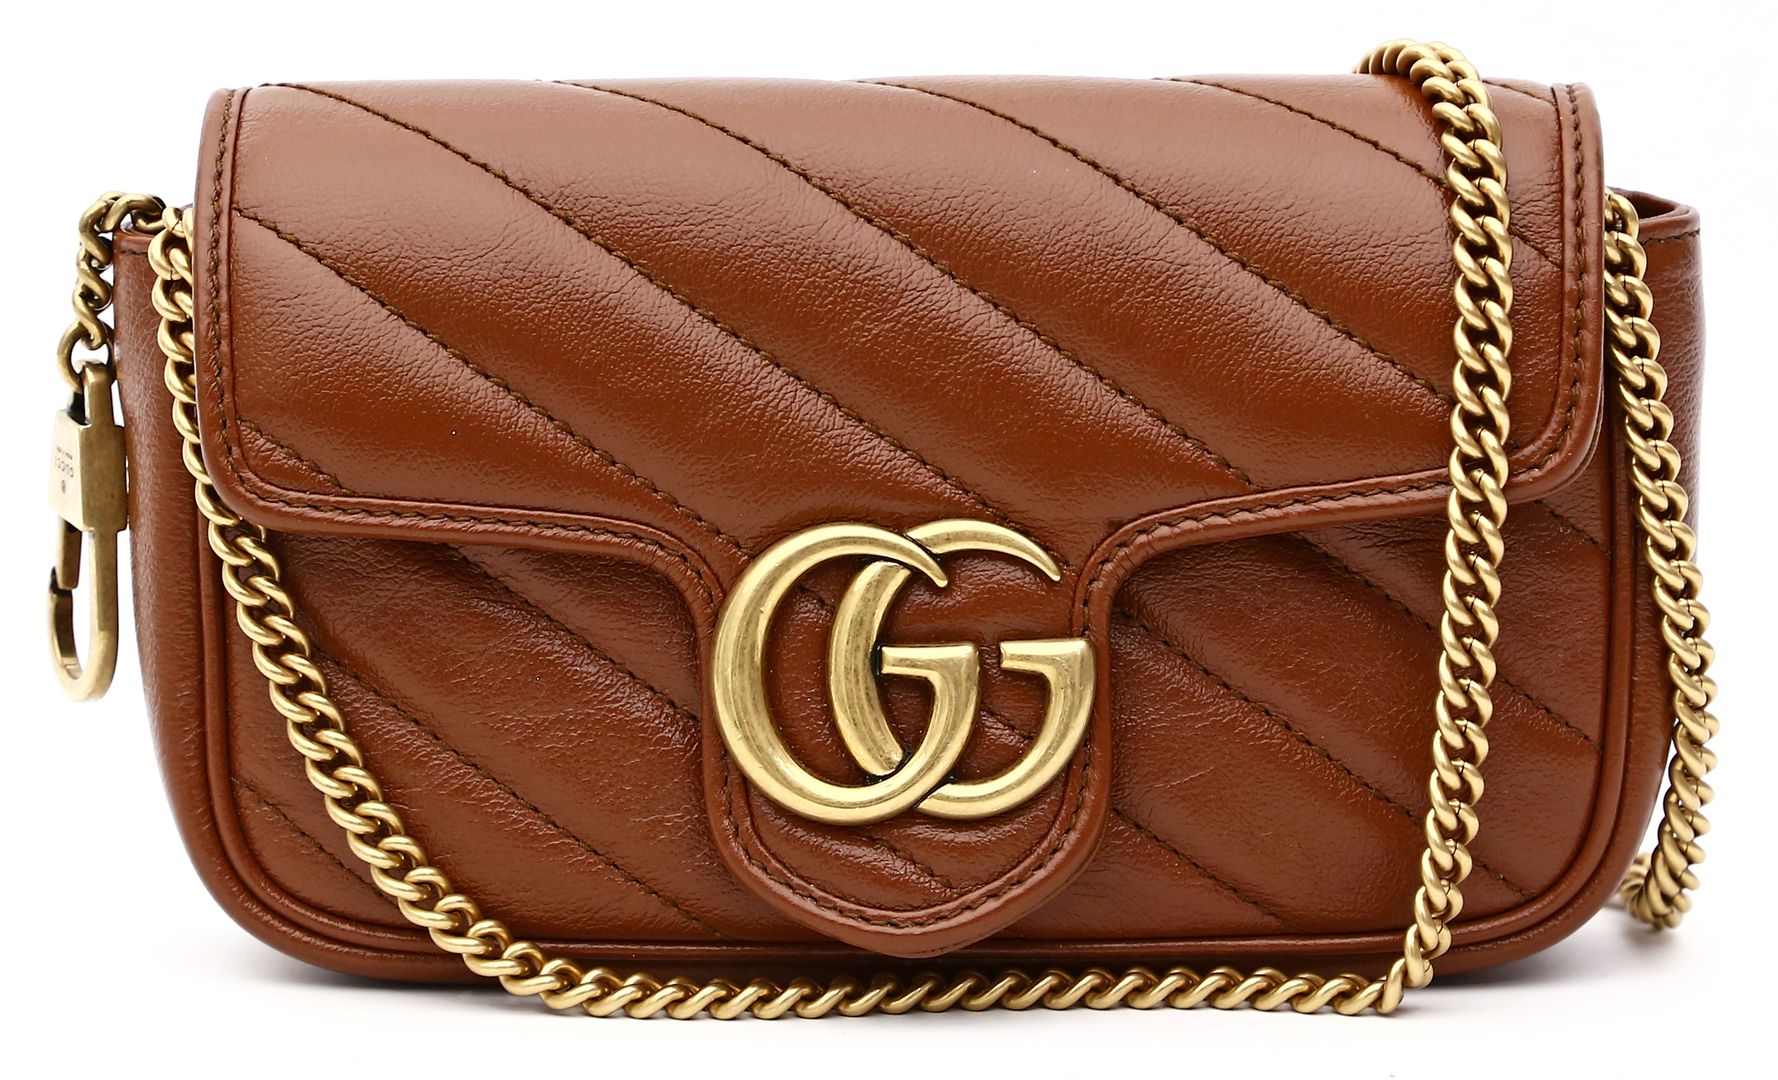 Tasche "Marmont GG", Gucci.